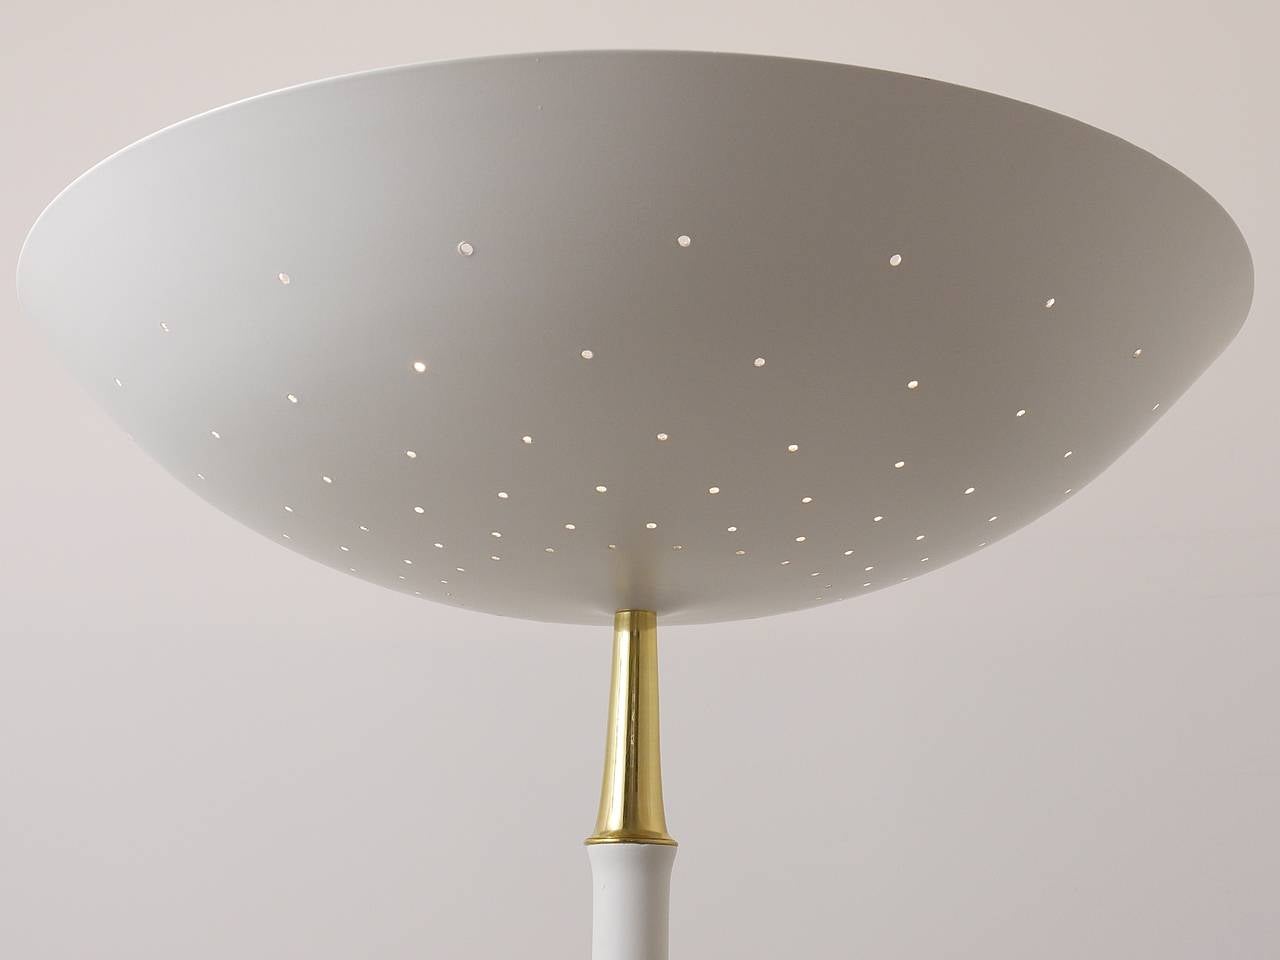 Elegant Italian Mid-Century Uplight Floor Lamp, Arteluce Stilnovo Style, 1950s In Good Condition For Sale In Vienna, AT